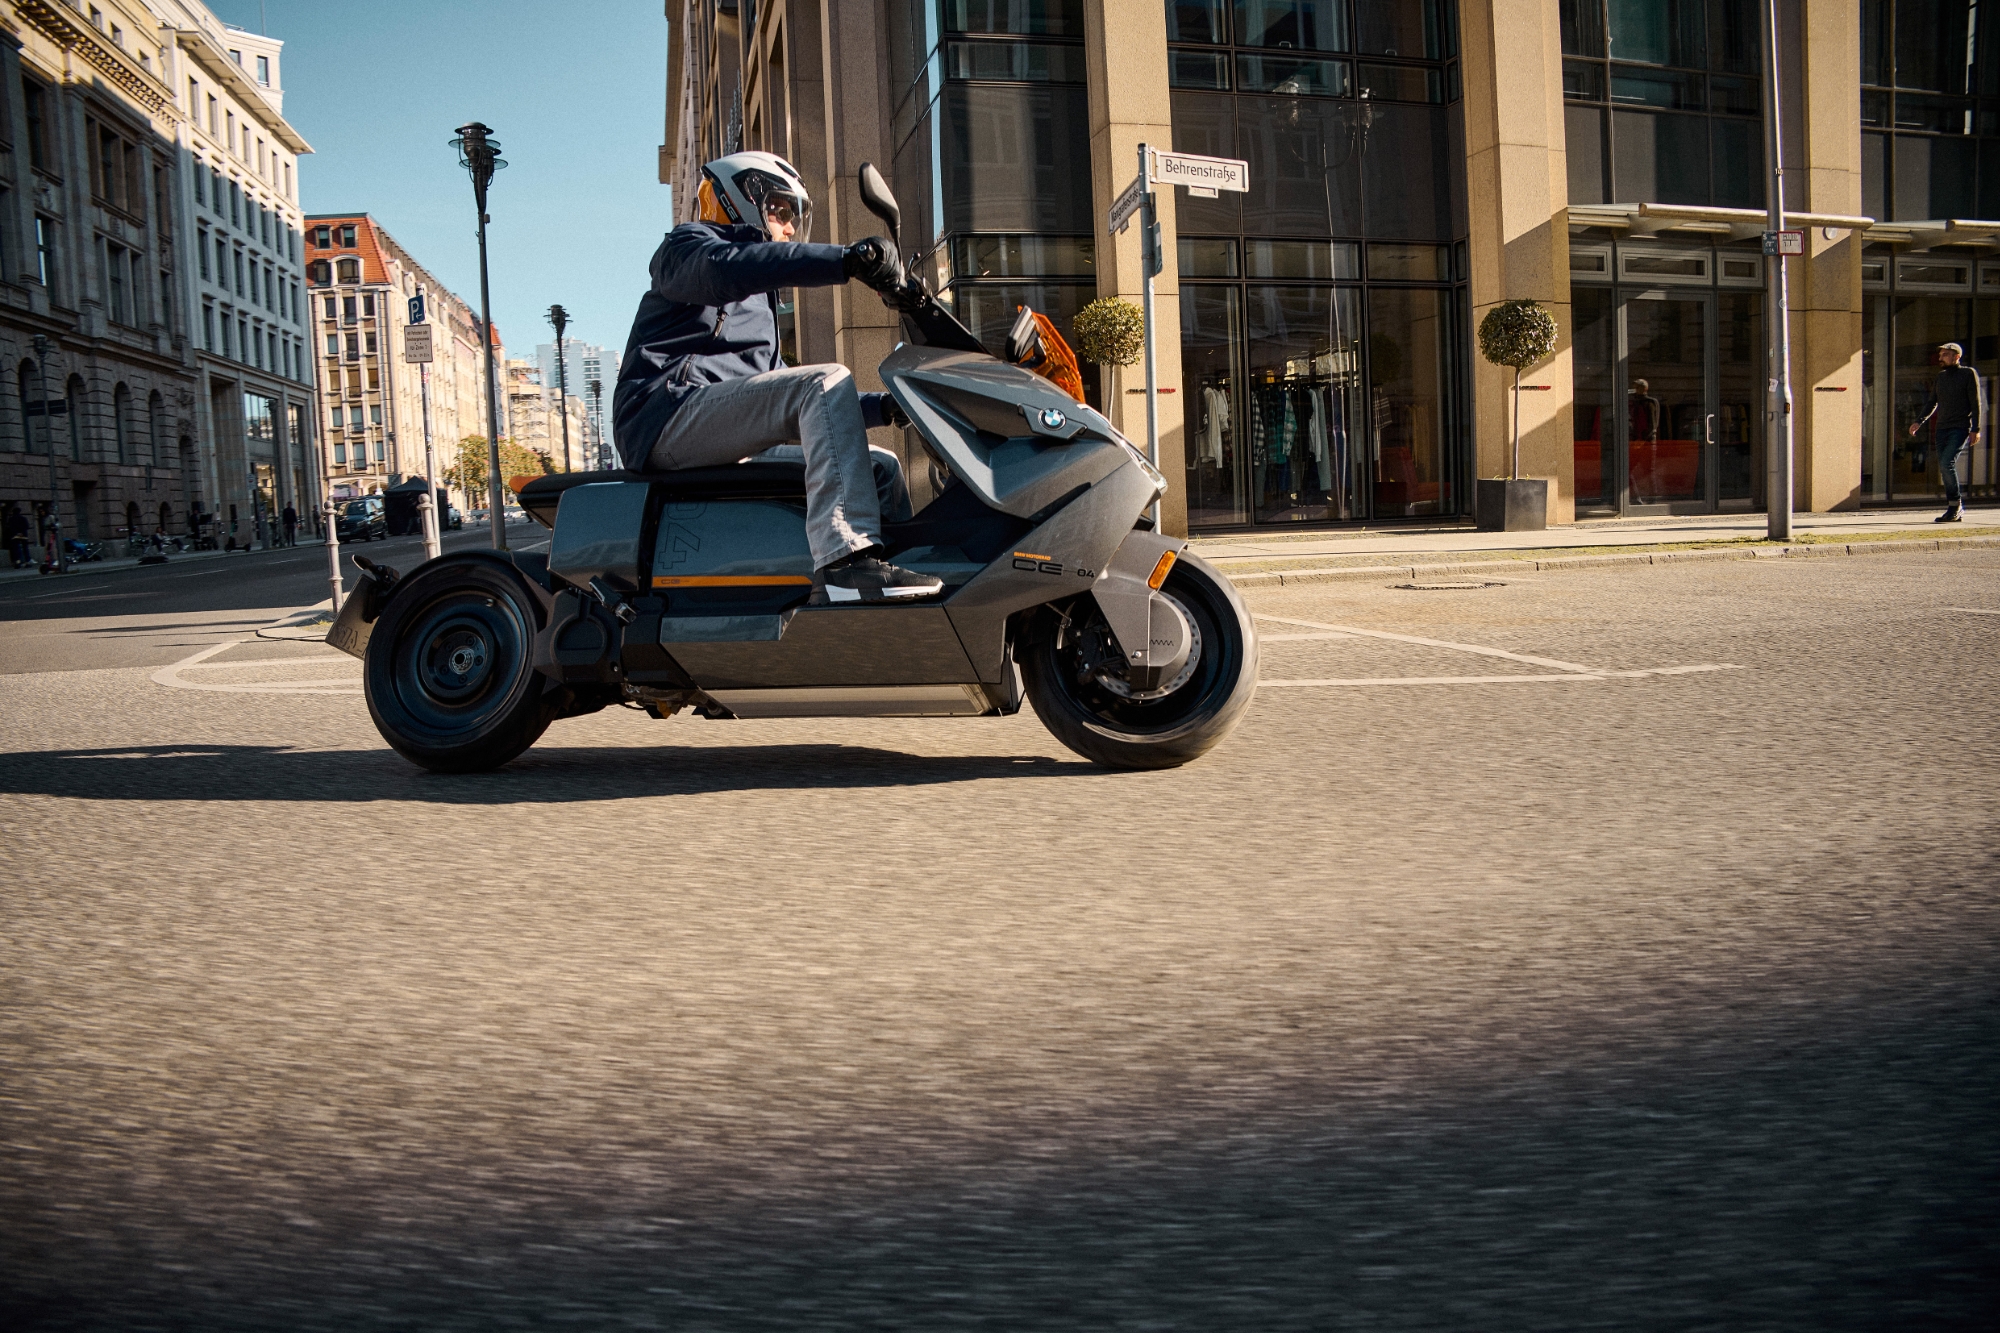 BMW lance la production en série du scooter électrique Motorrad CE 04 avec une autonomie de 130 km et une accélération à 50 km/h en 2,6 secondes